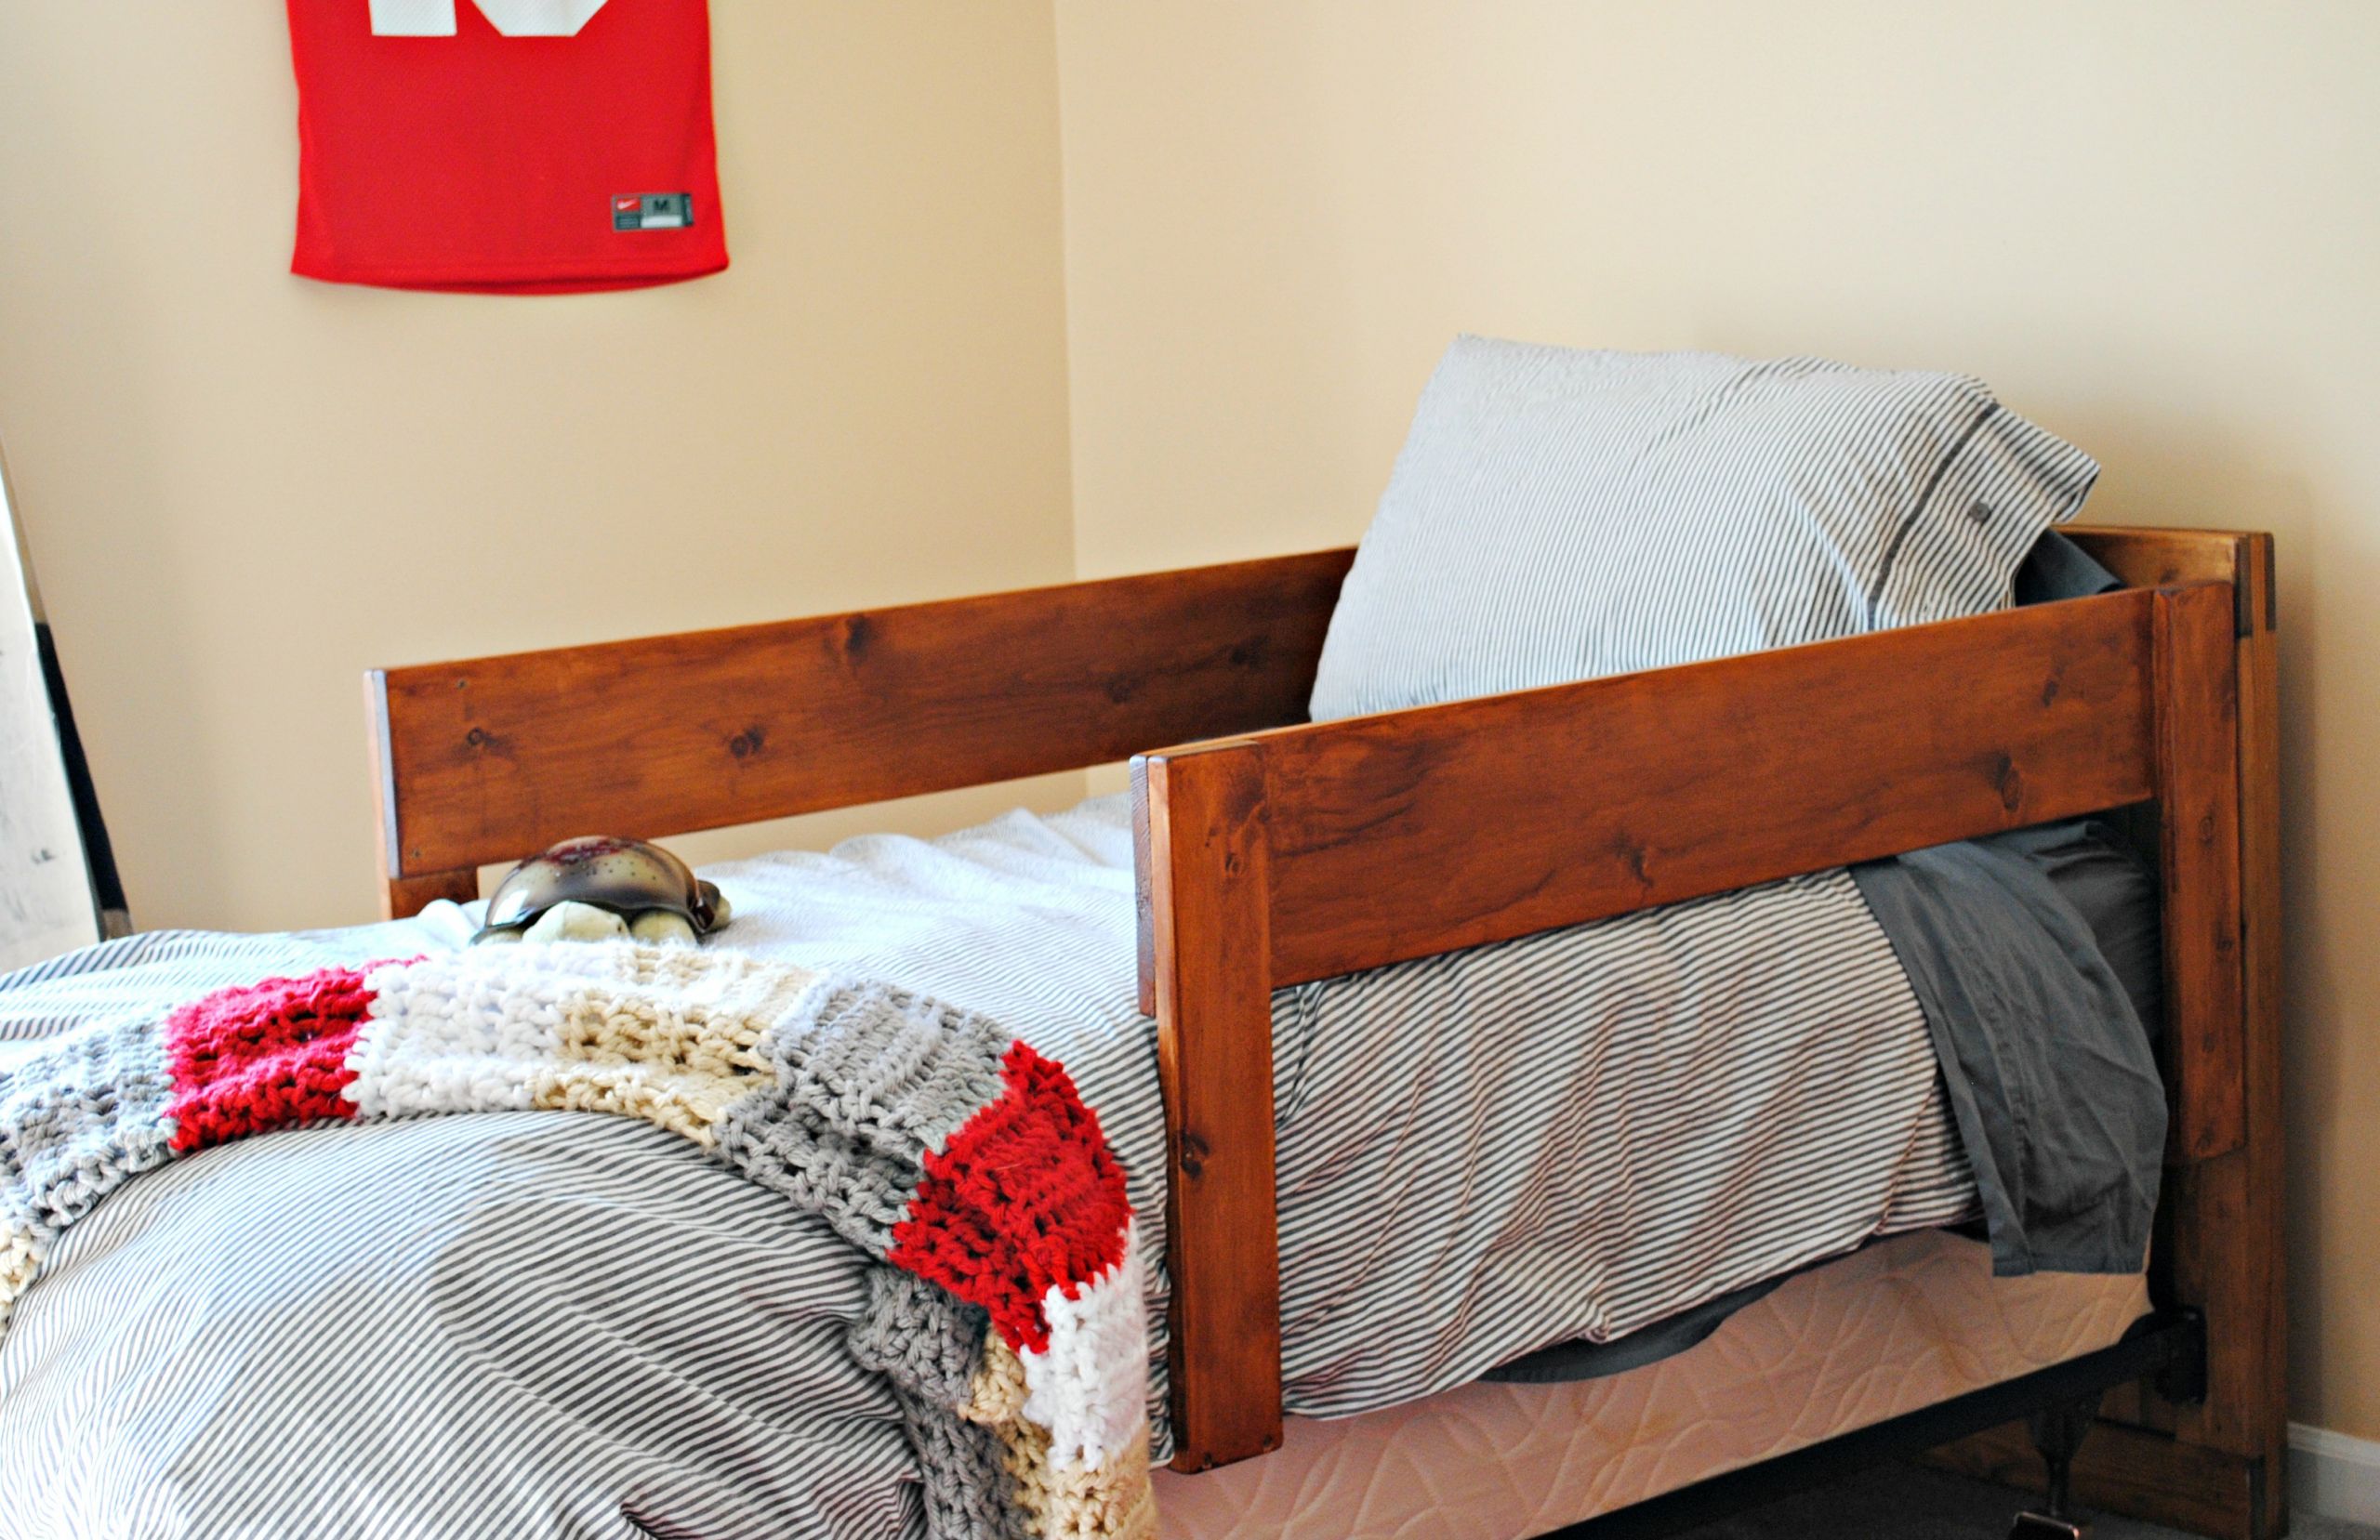 DIY Toddler Bed Rails
 DIY Toddler Bed Rails cypress wool